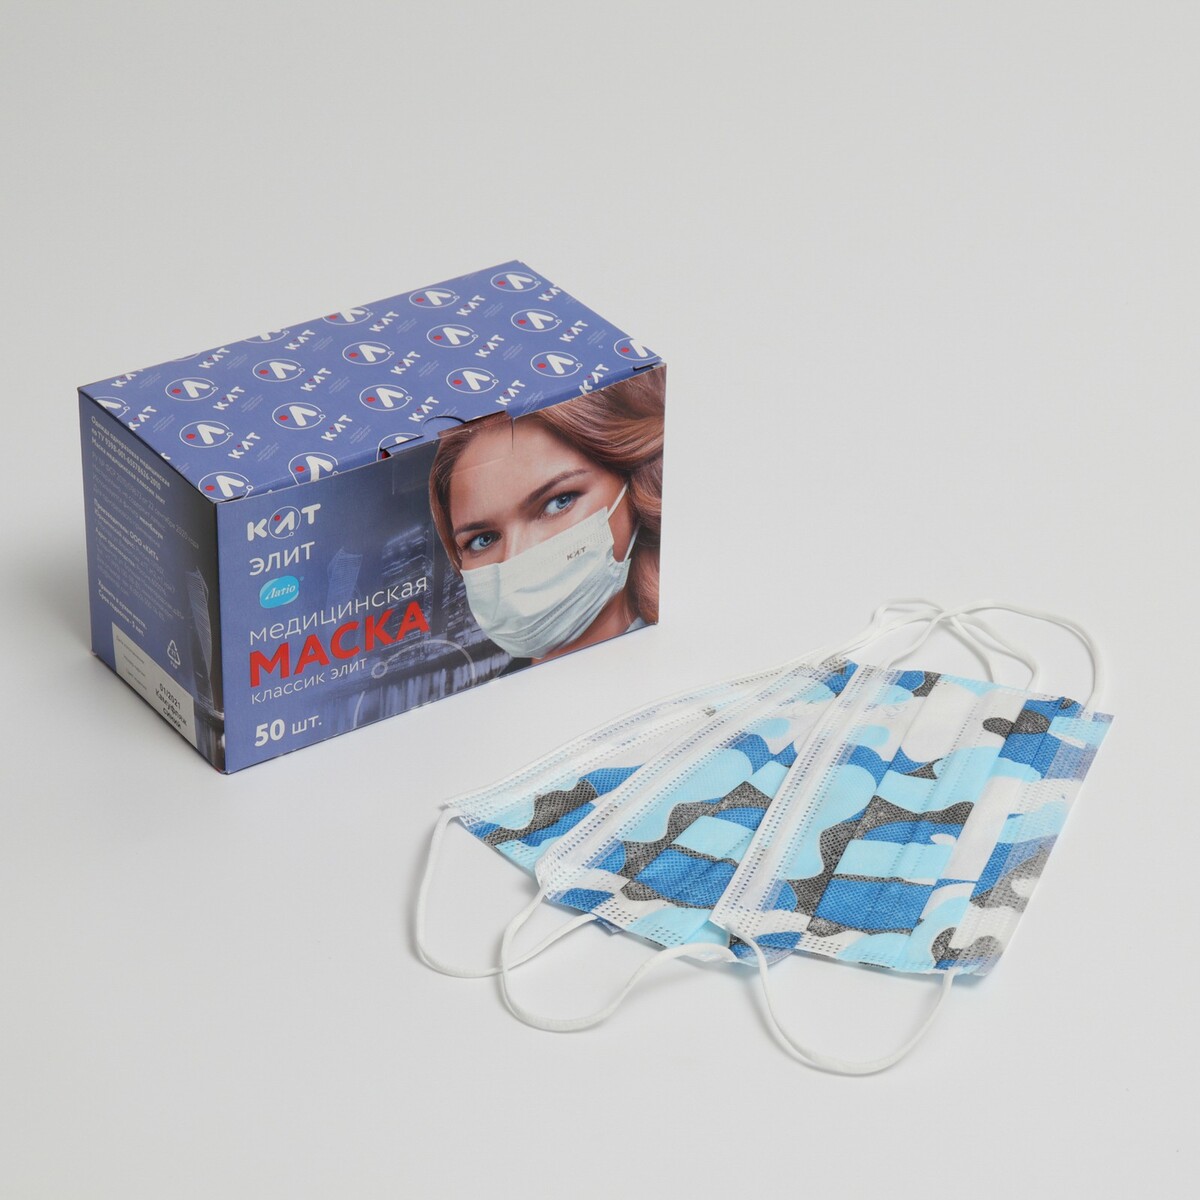 Маска медицинская latio синий камуфляж, 2 фиксатора формы, 50 шт картонный блок